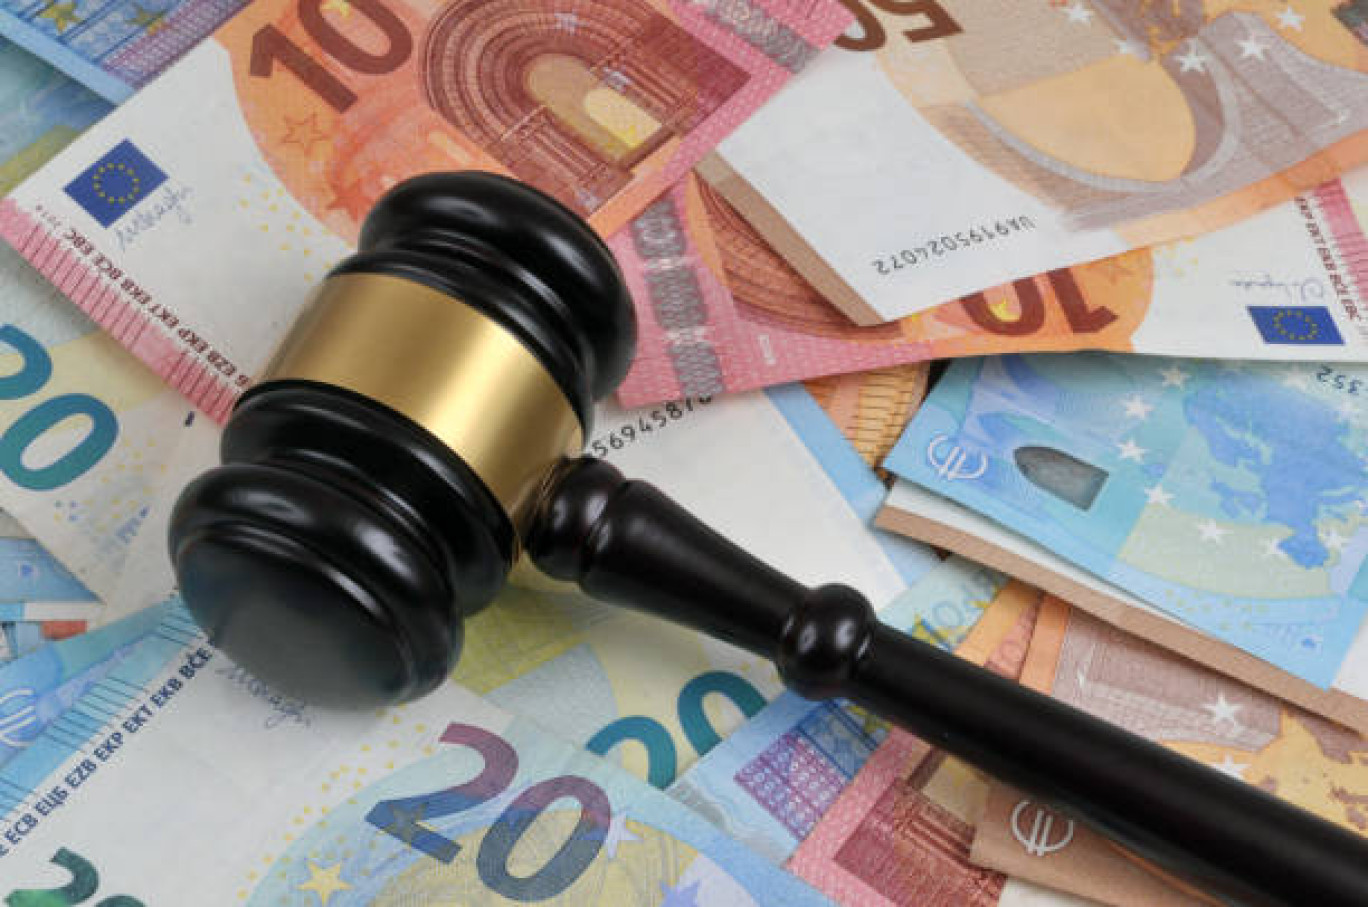 Les services du contrôle fiscal de Moselle procèdent de plus en plus à des signalements au procureur de comportements frauduleux. 